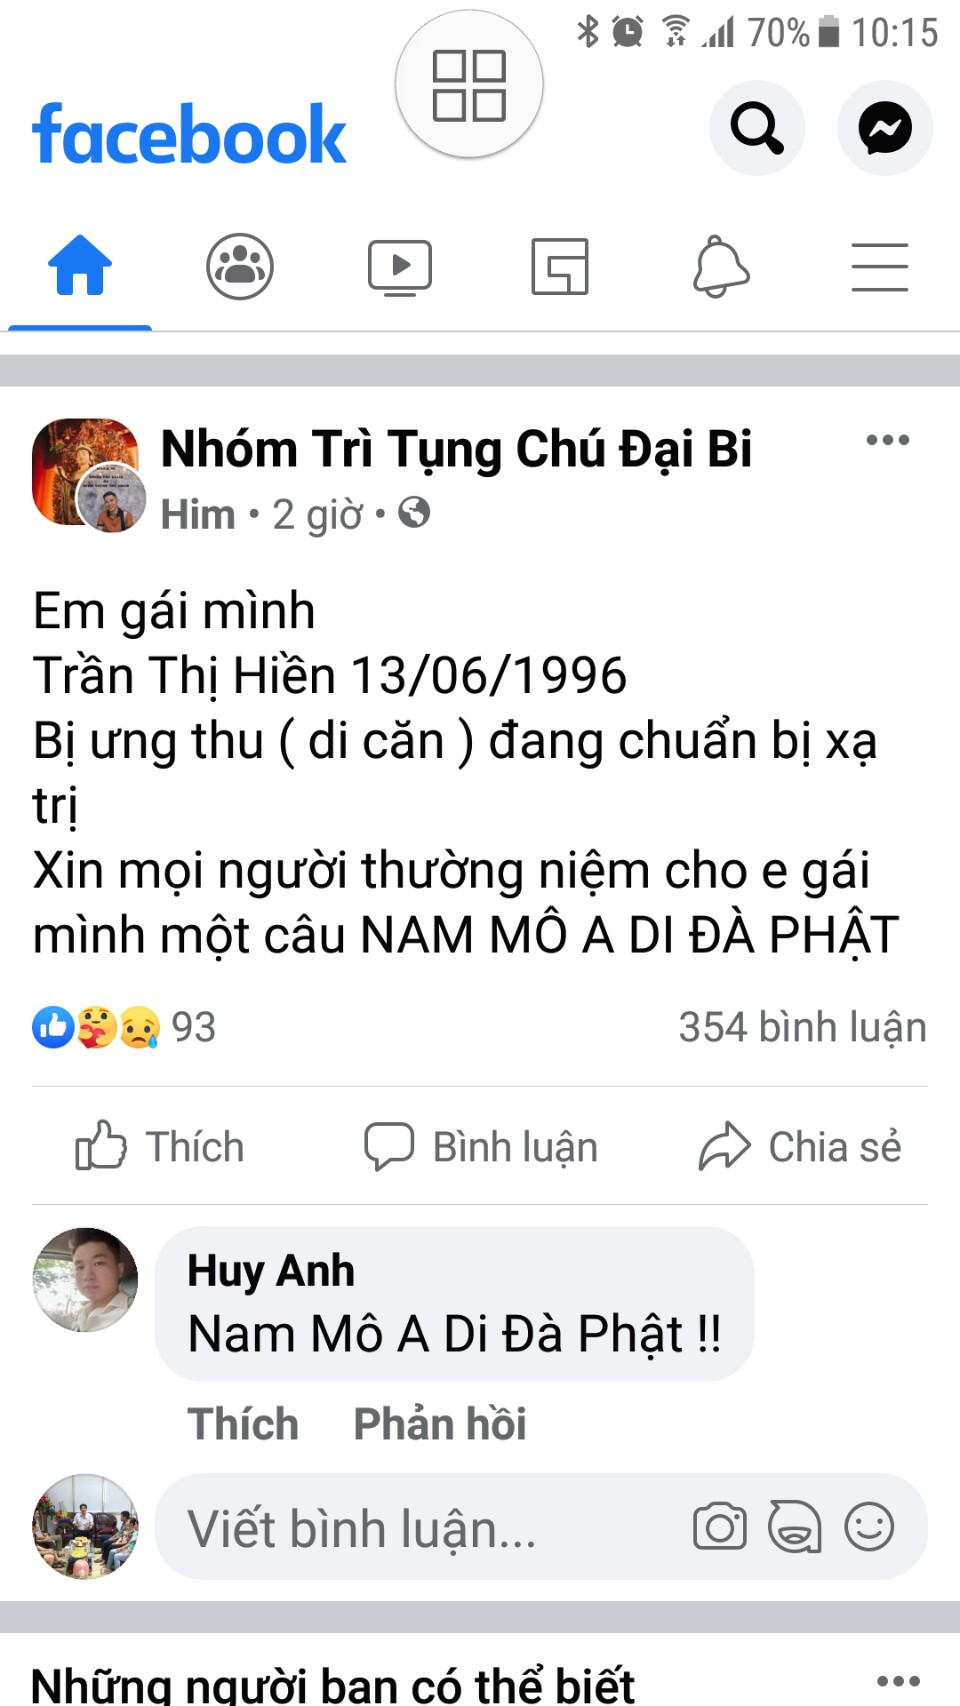 Trần Thị Hiền 13.06.1996